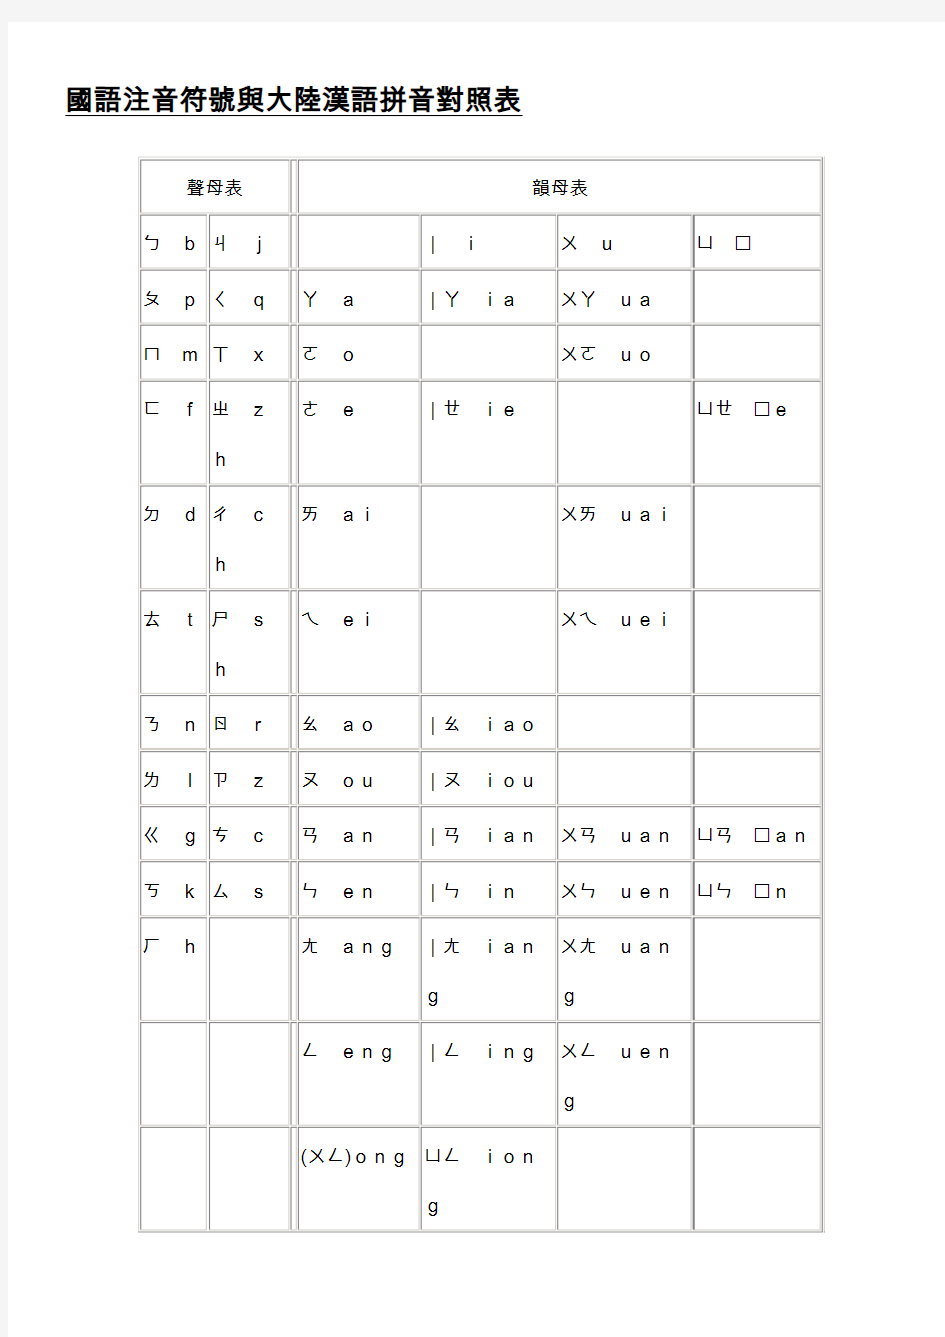 国语注音符号与大陆汉语拼音对照表